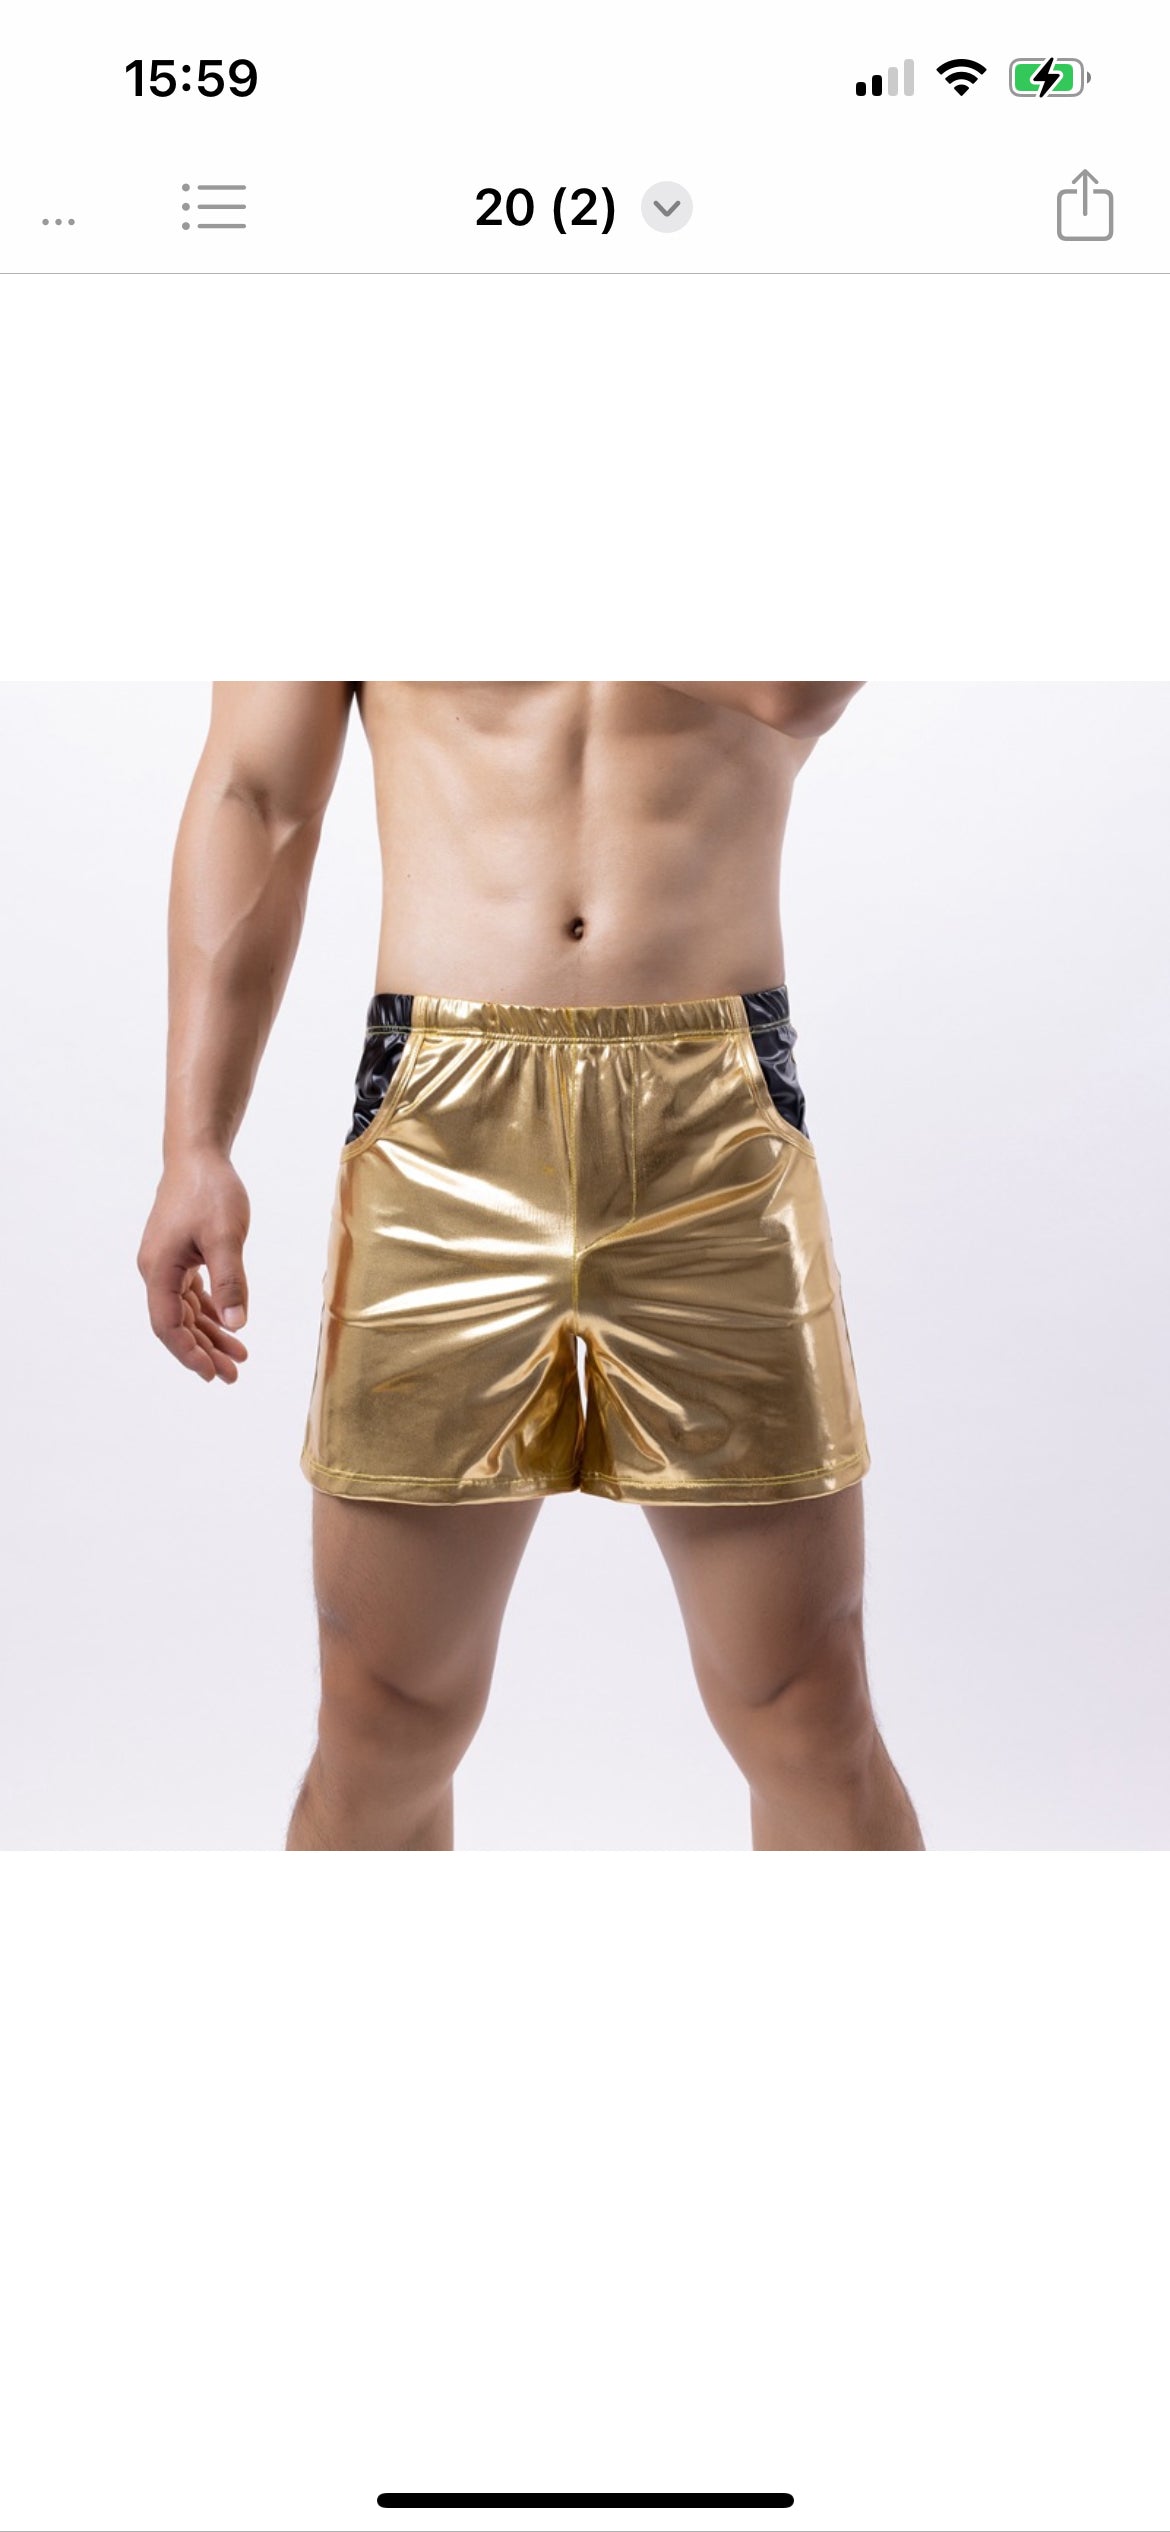 Guldfärgat partyset eller festdräkt, armlös hoodie och shorts i guld